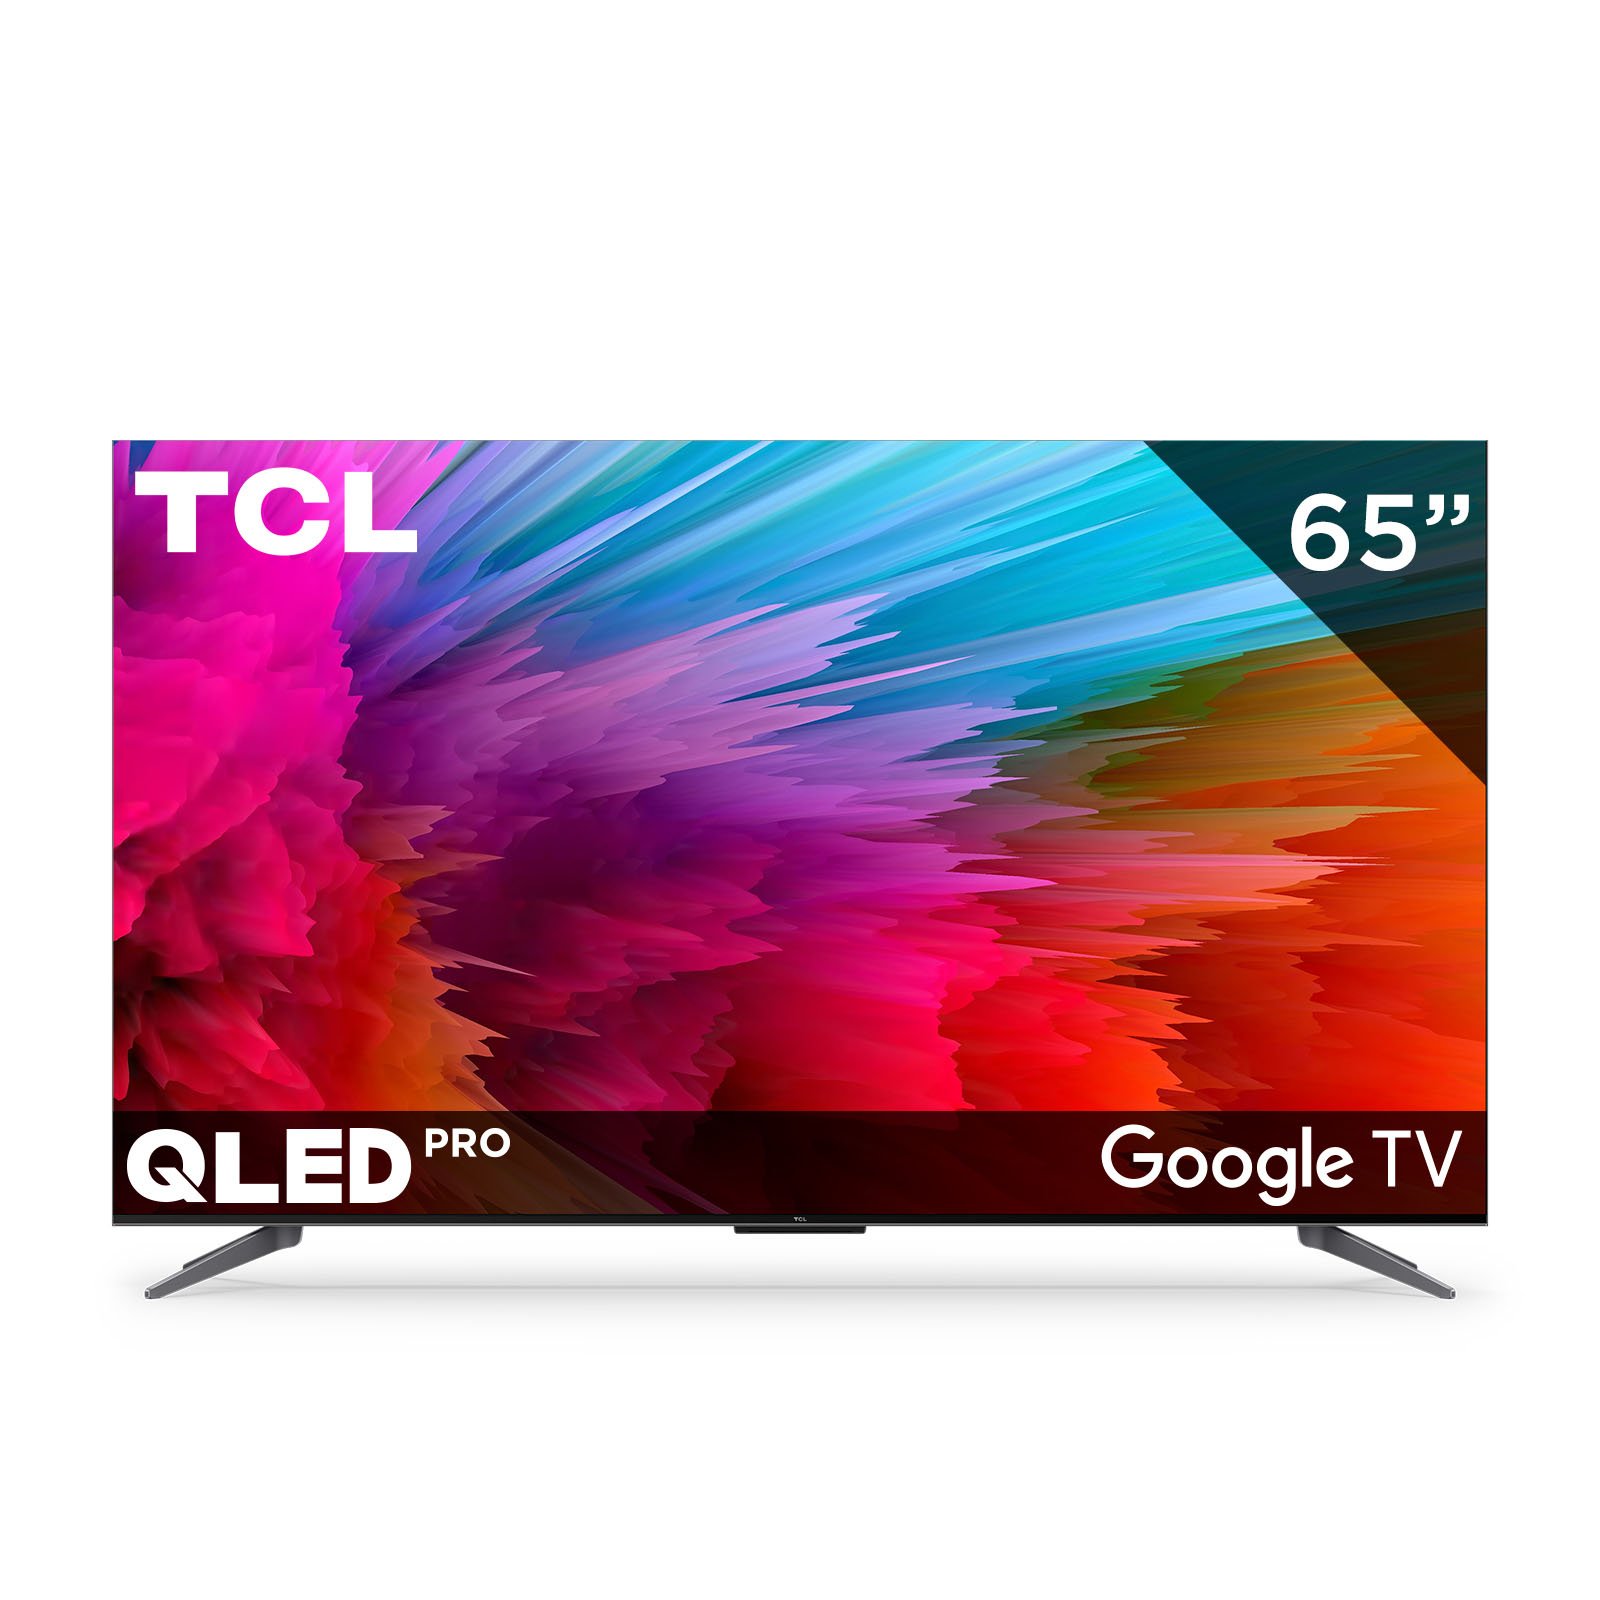 Vive la Excelencia 4K! TV QLED 65 TCL con Google TV en Panafoto.